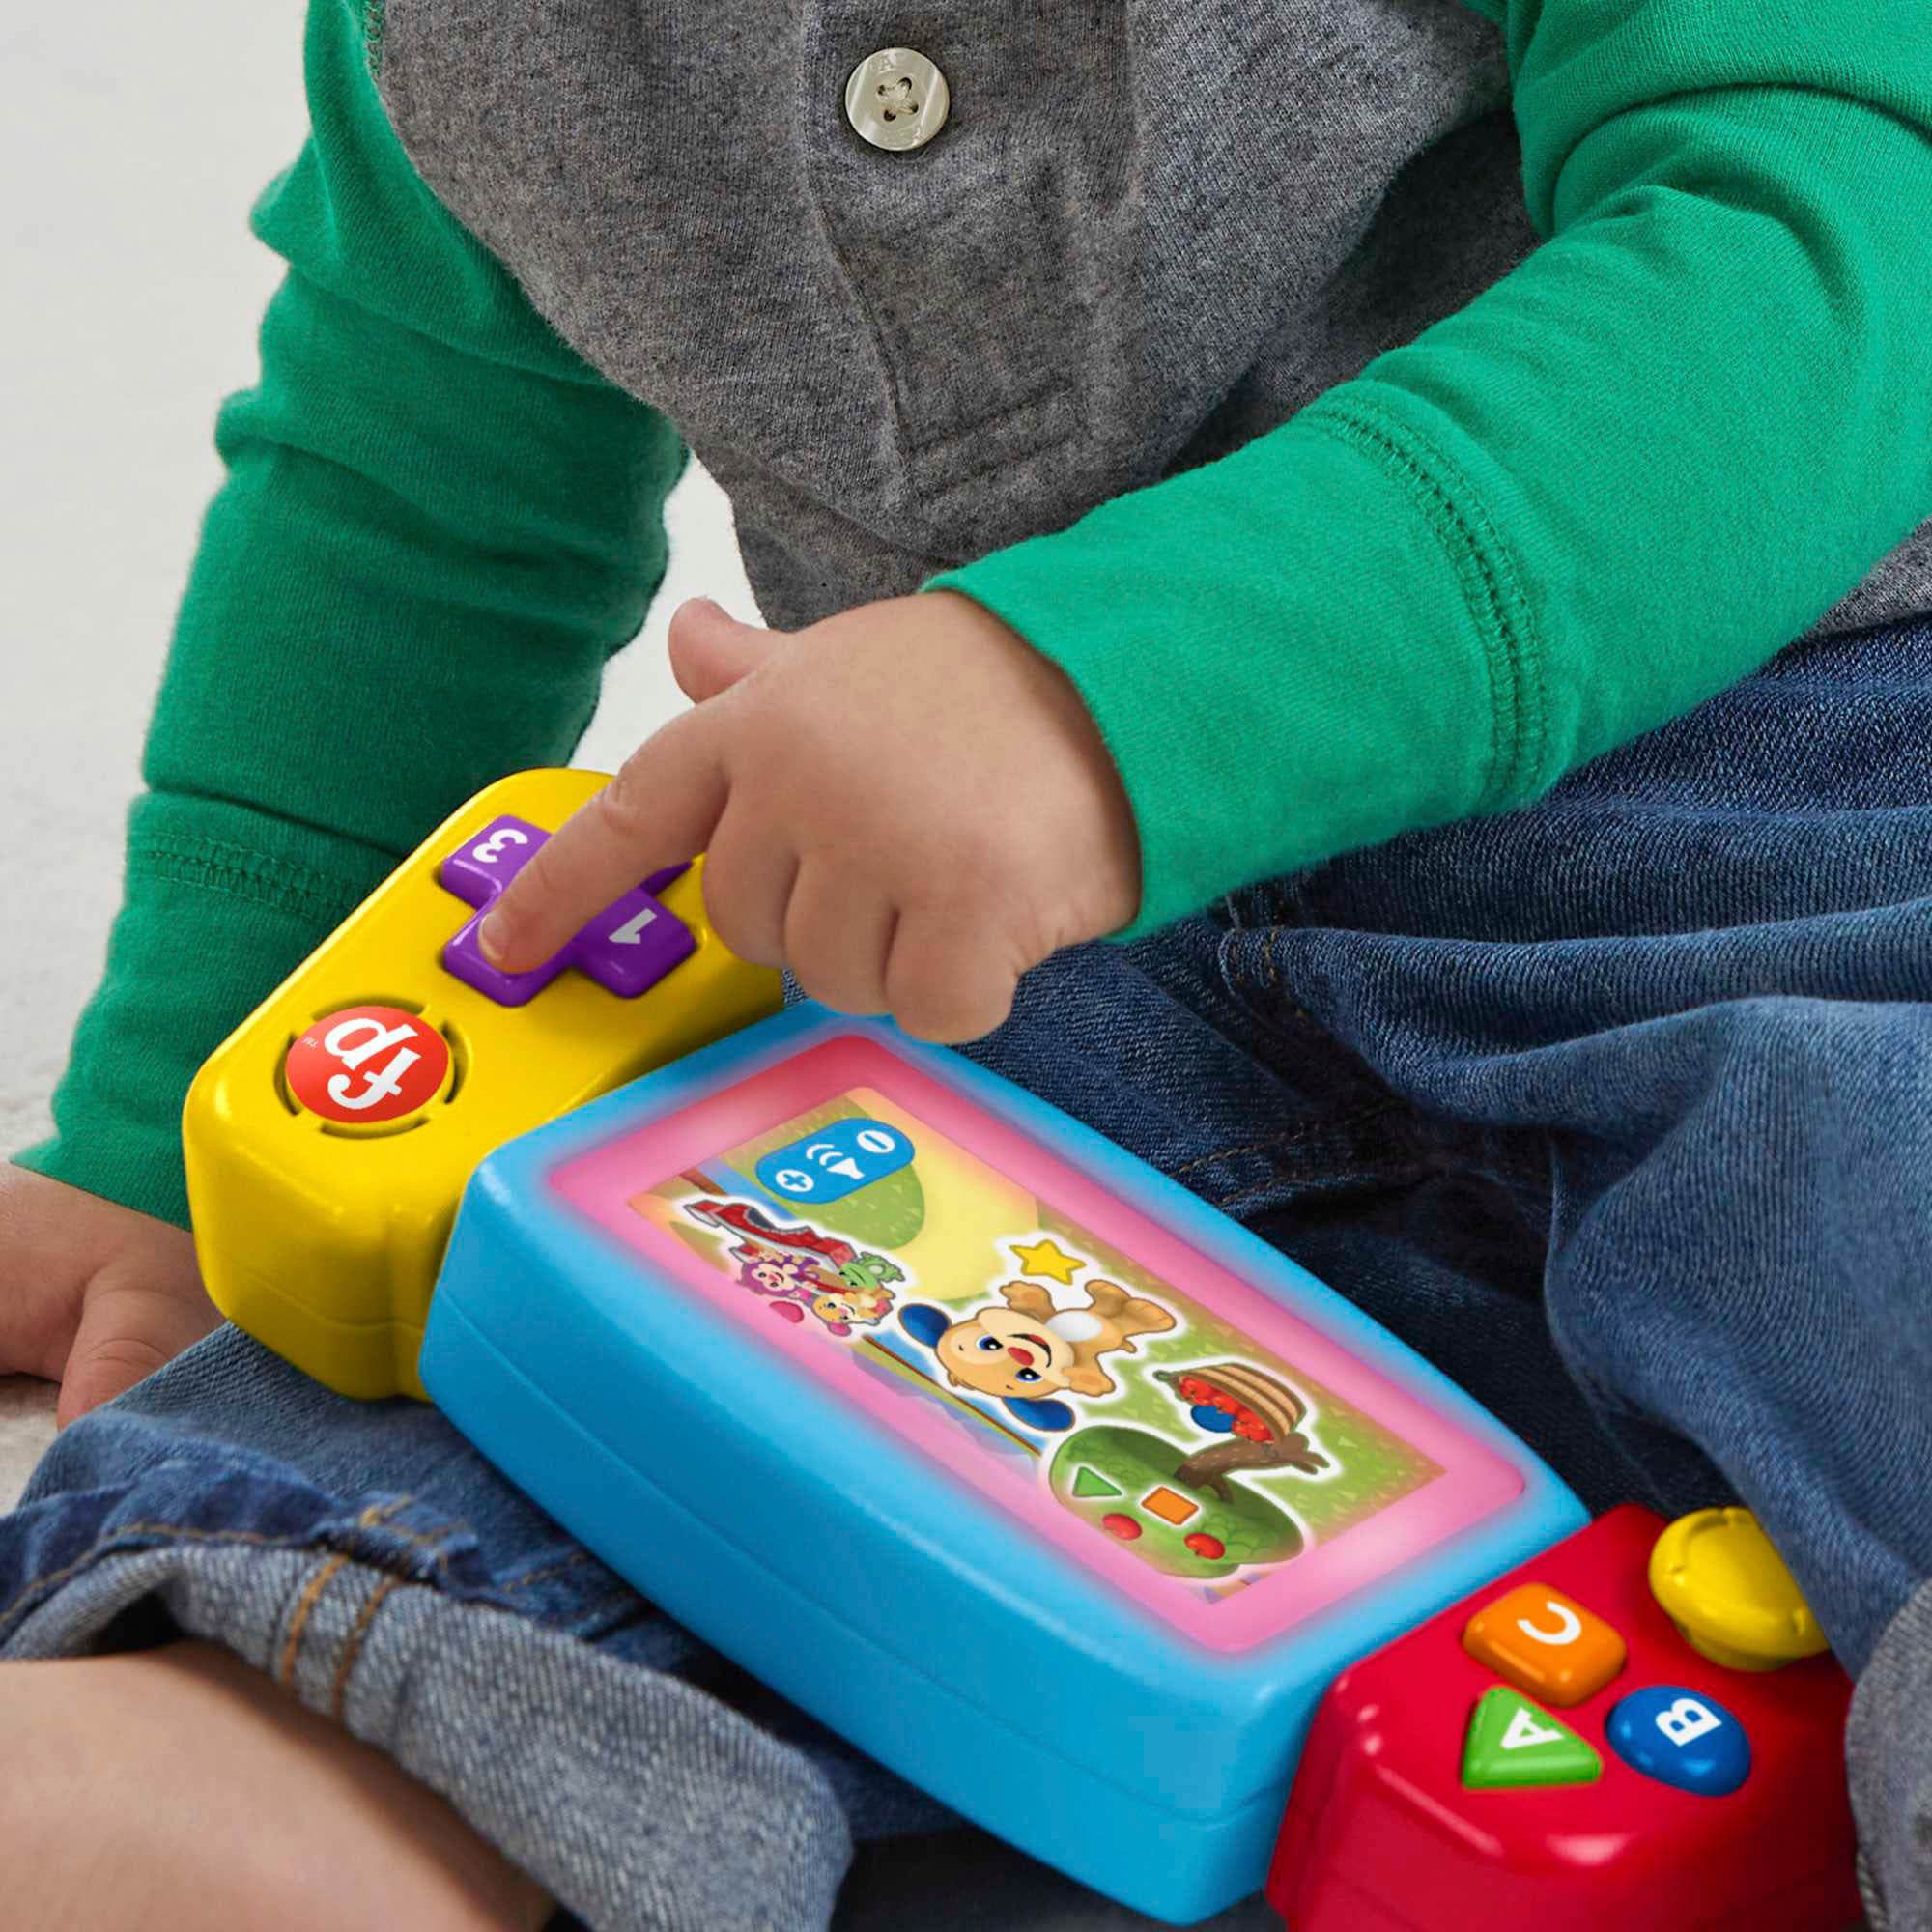 Fisher-Price Lernspaß Mikrofon, Baby-Spielzeug, Kinder Mikrofon,  Lernspielzeug online bestellen